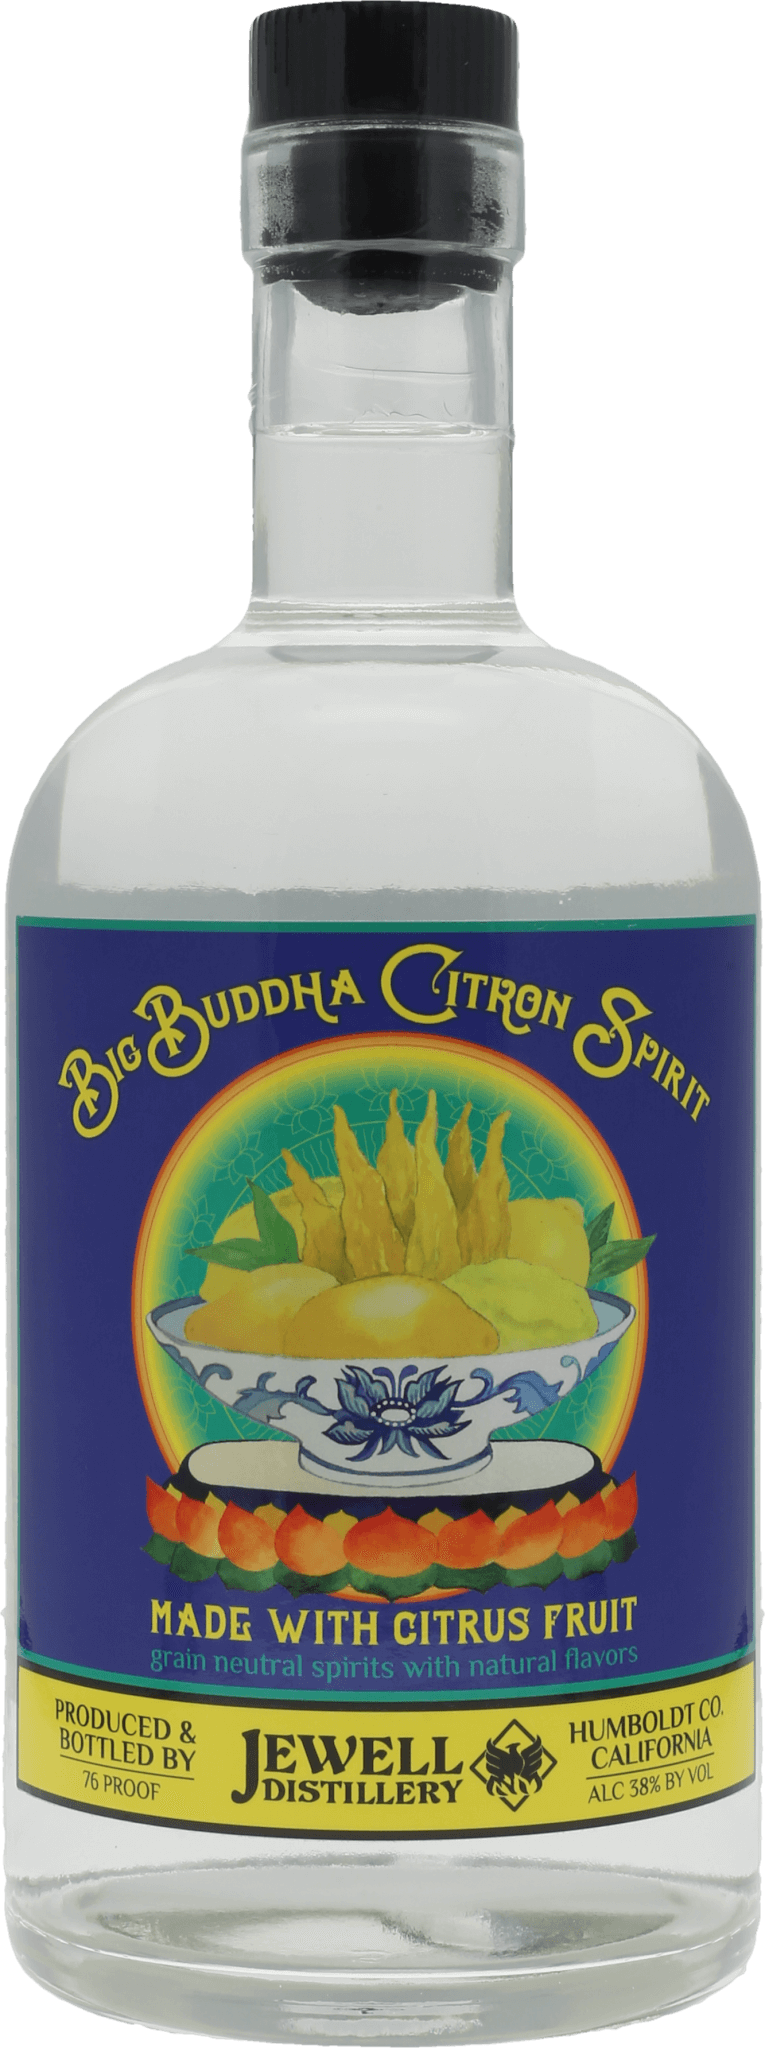 Big Buddha Citron Vodka